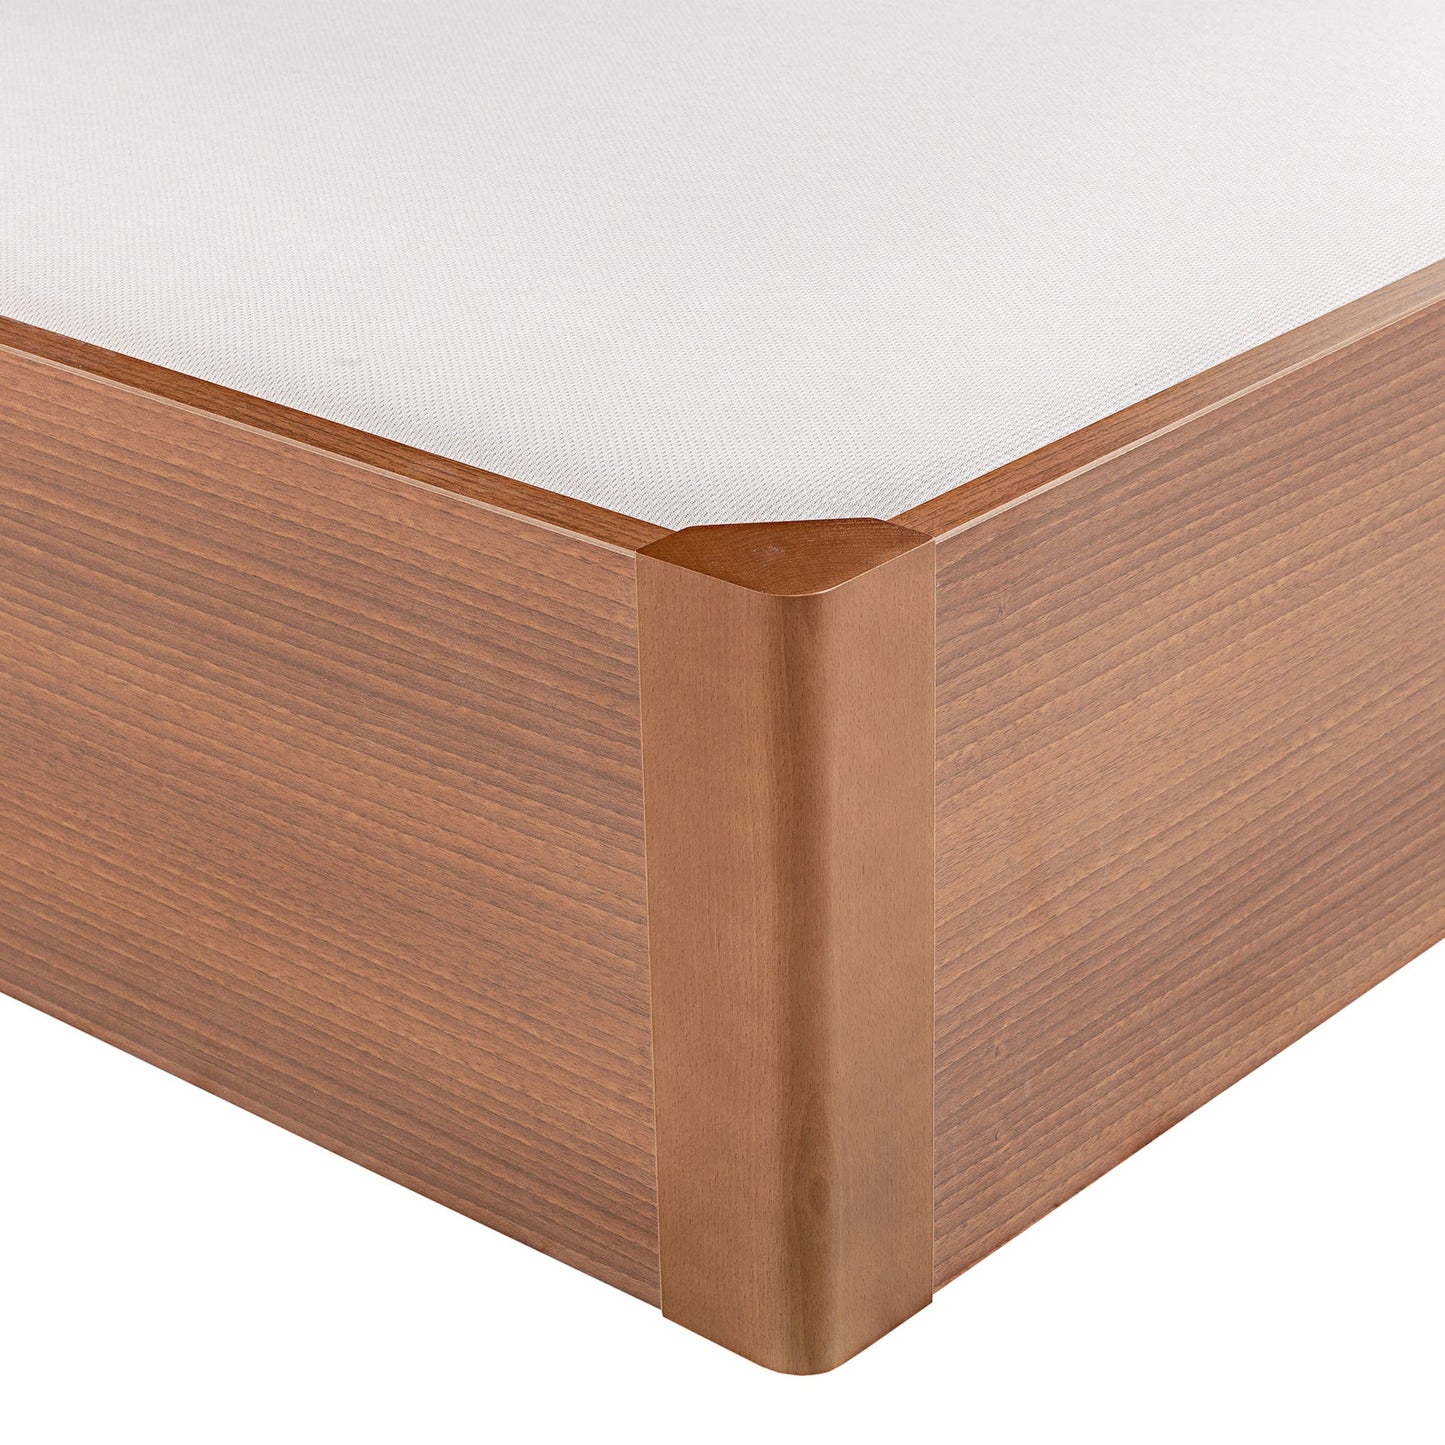 Canapé abatible de madera tapa única de color cerezo - DESIGN - 135x190